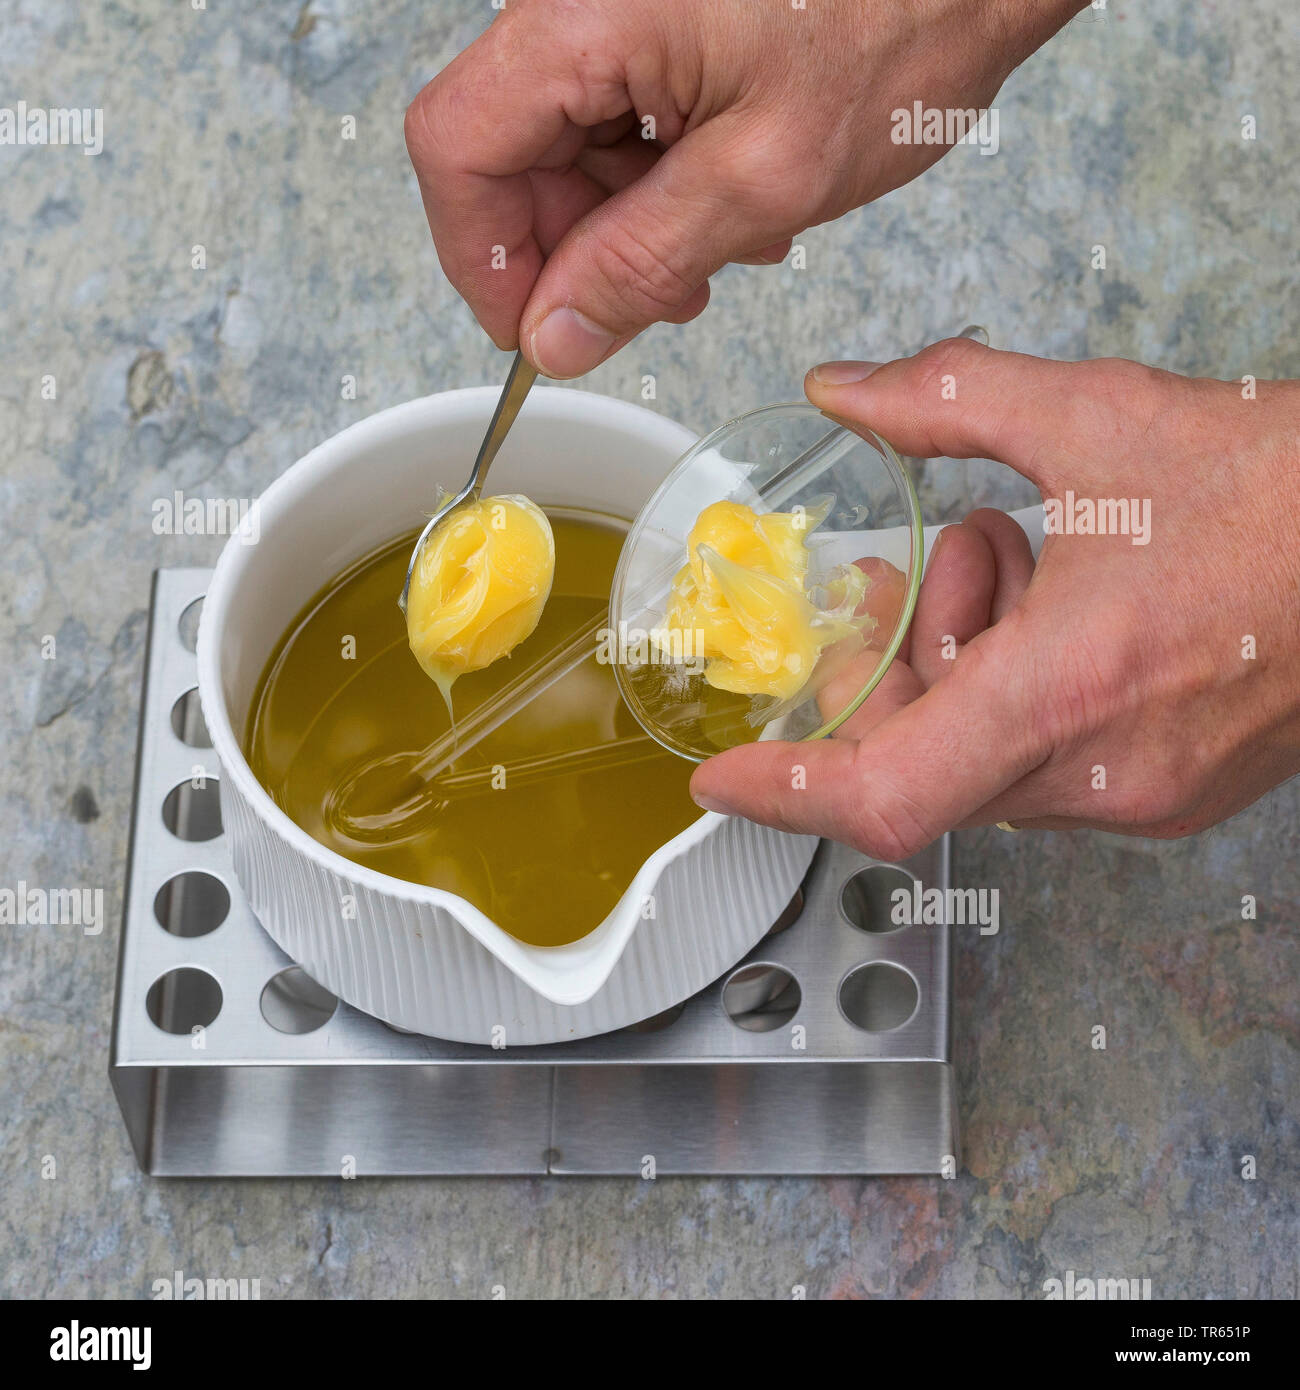 Politique L'onagre (Oenothera biennis), la production de crème glacée, onagre 3 étape : la lanoline est ajouté à l'huile dans un pot sur le réchauffement, série photo 3/10, Allemagne Banque D'Images